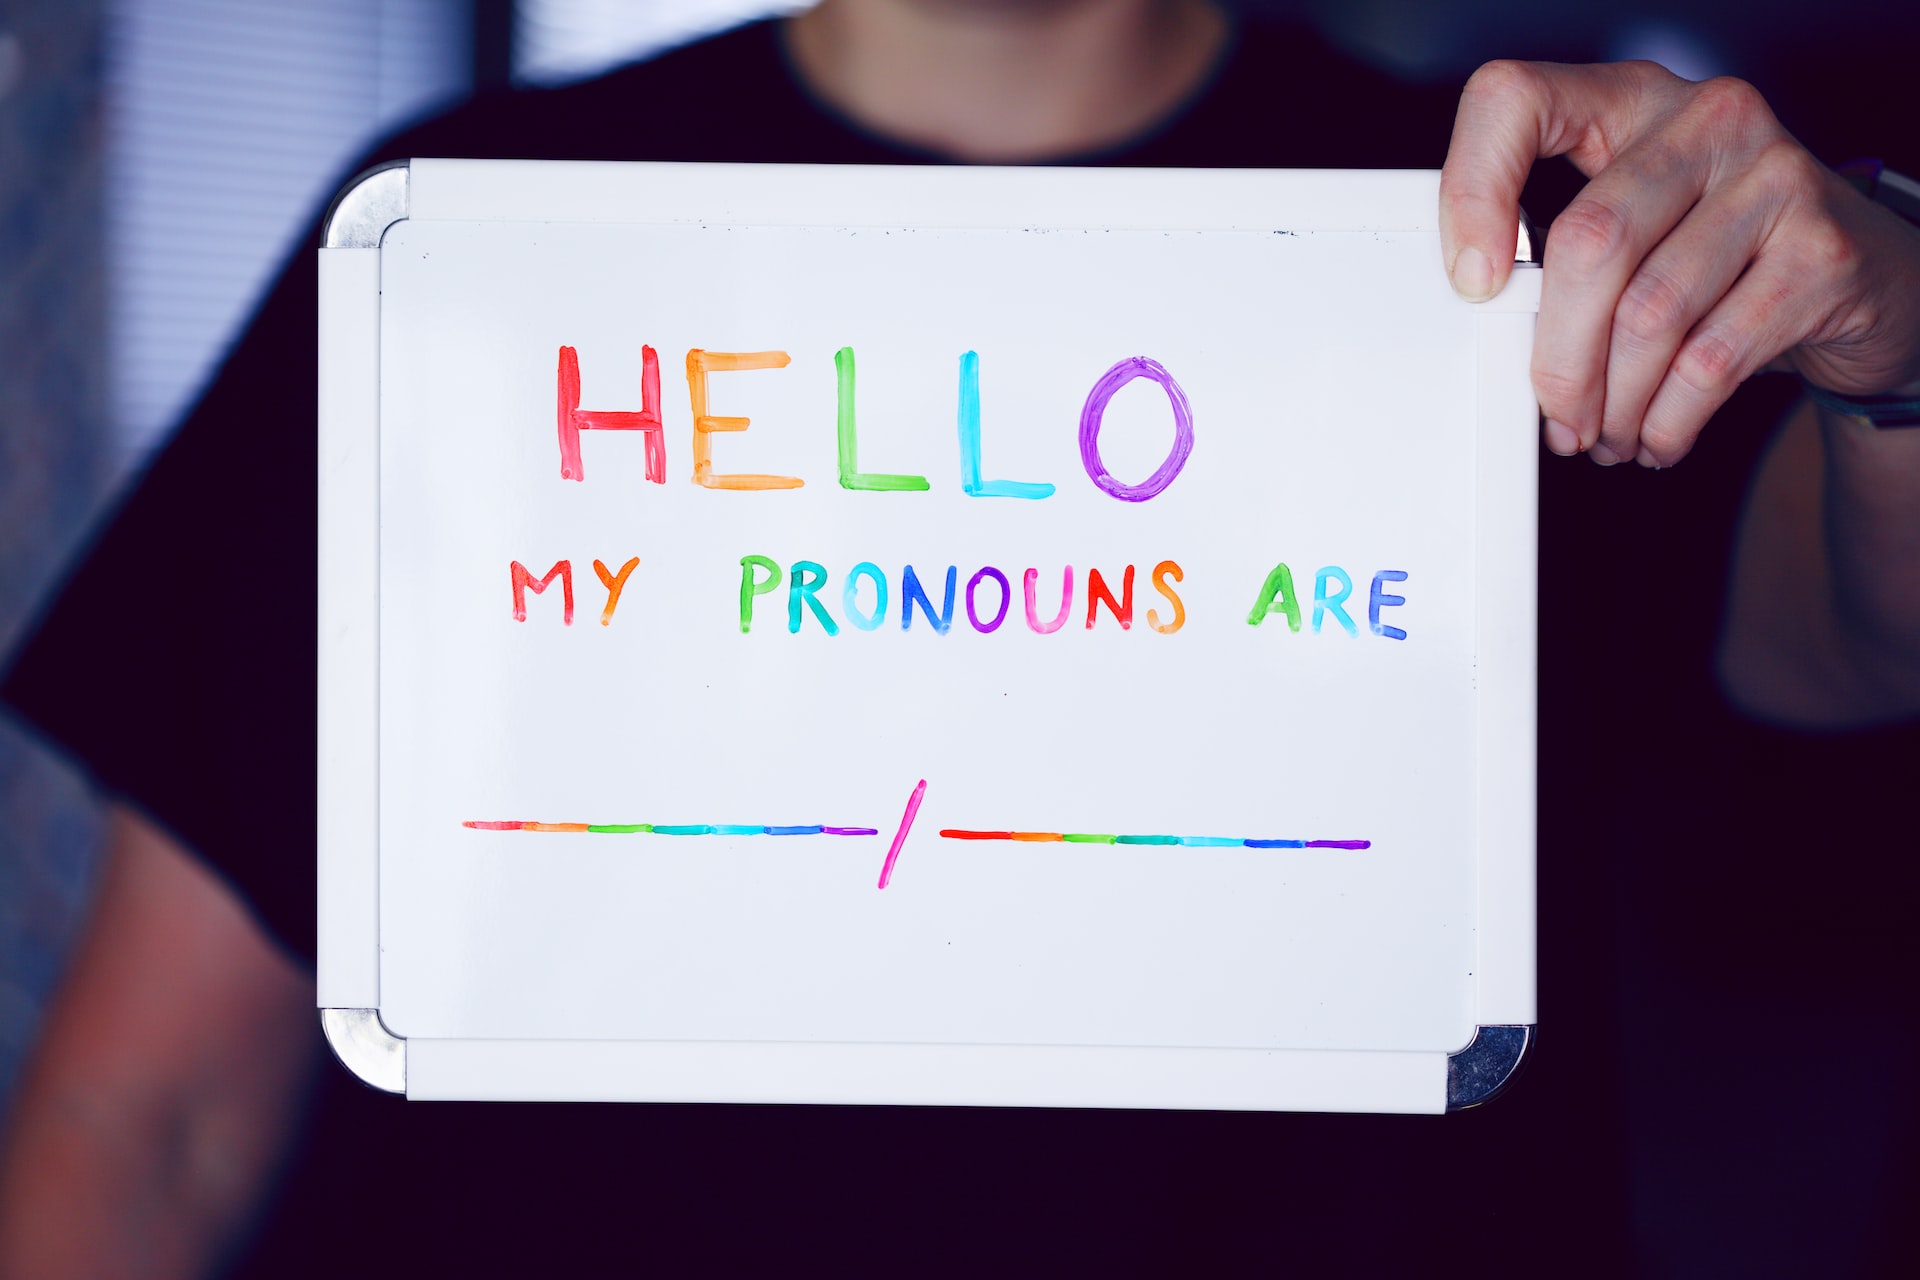 Pronouns matter.